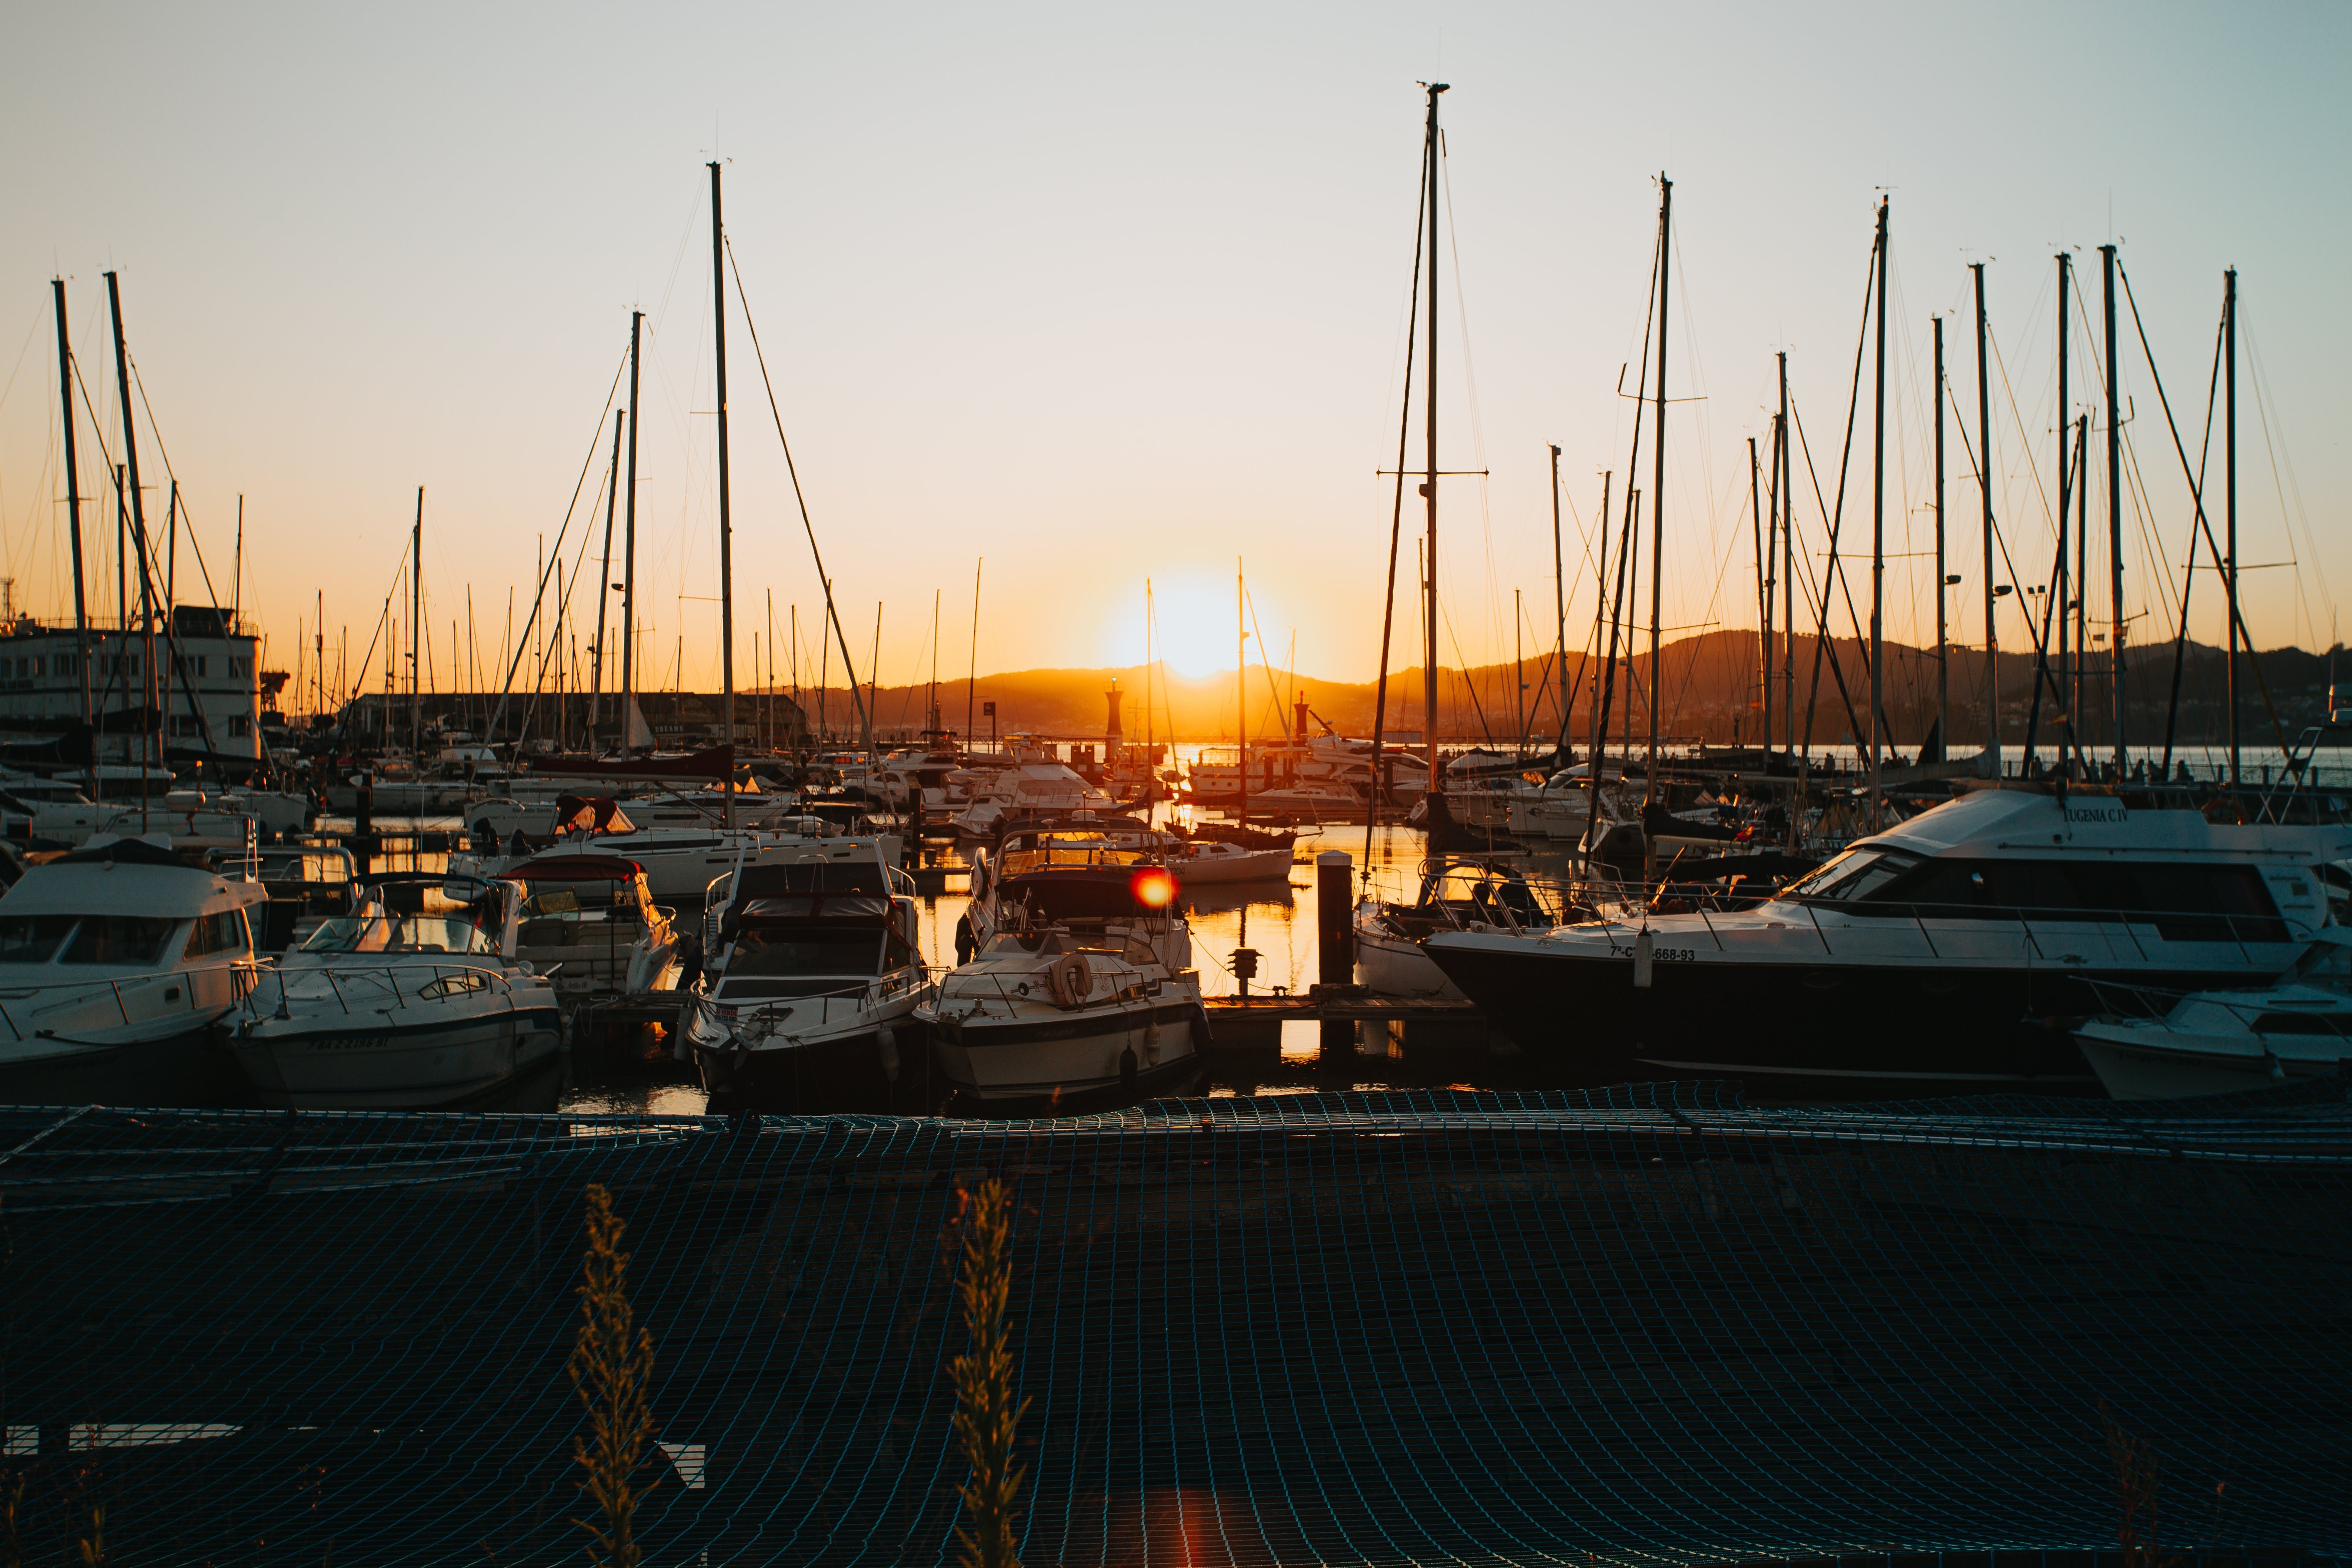 ボートでいっぱいのマリーナの夕日写真 